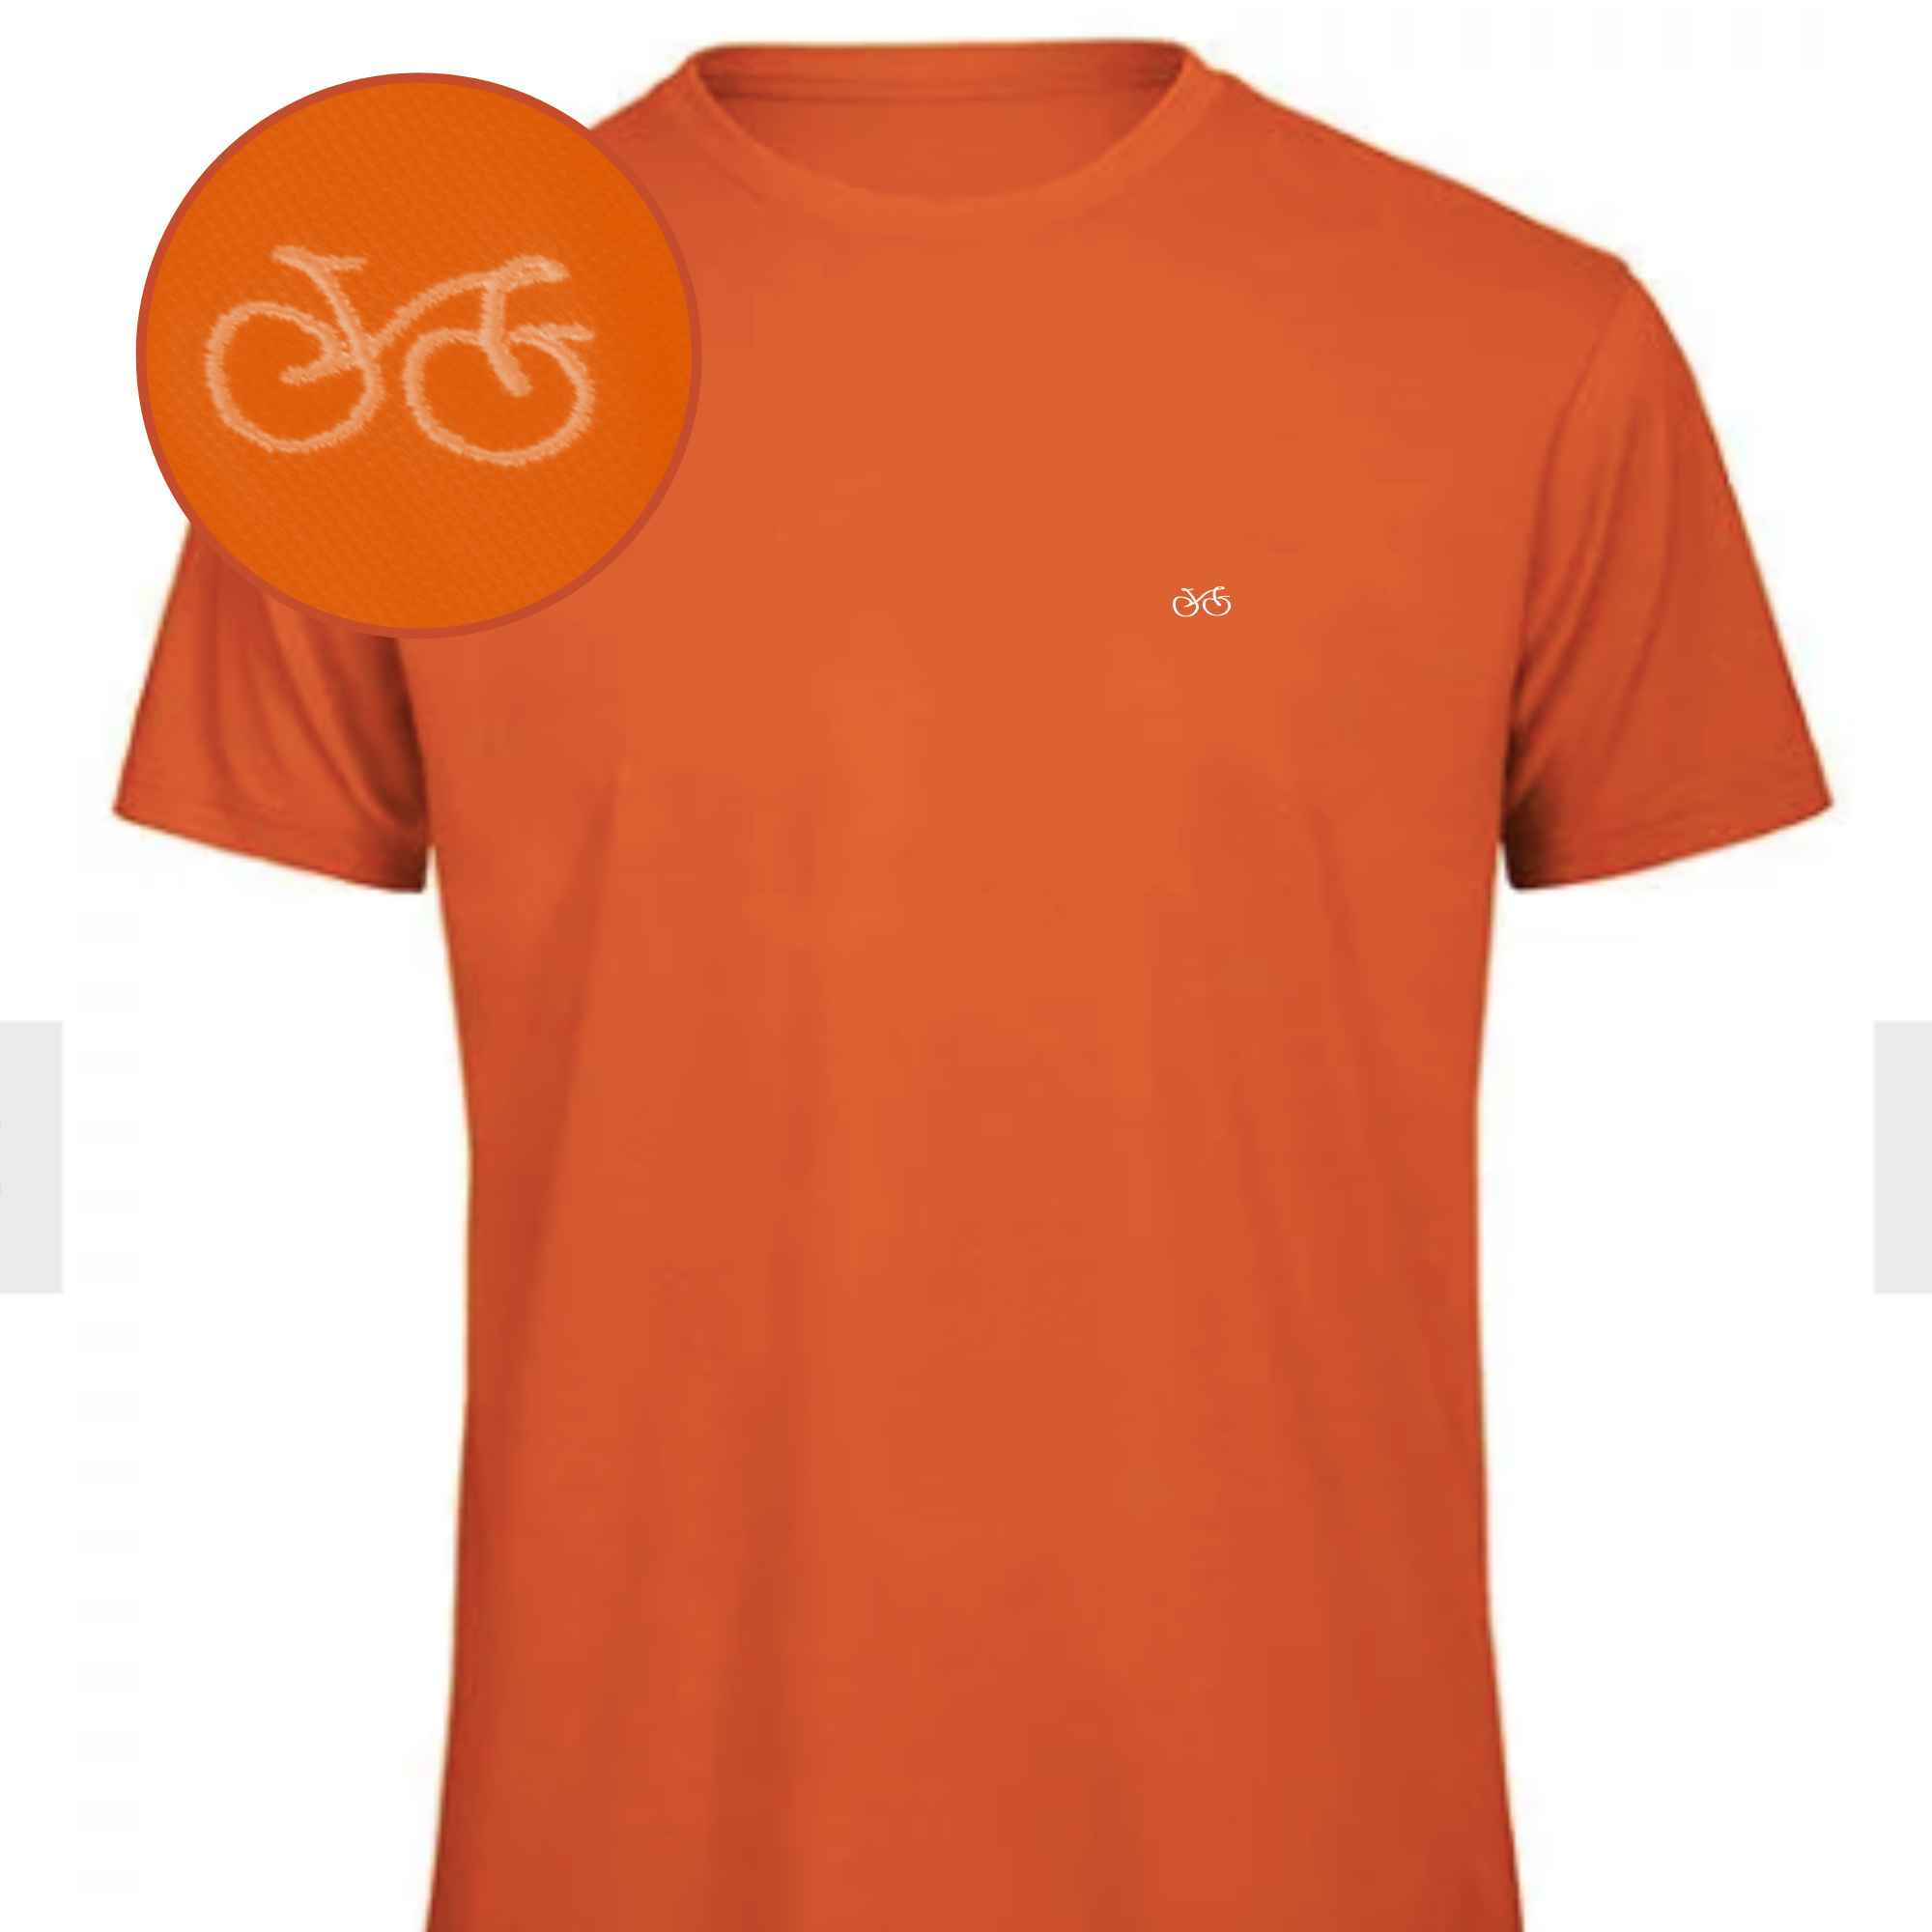 Shirt in einem kräftigen Orange mit Fahrradmotiv in der Farbe deiner Wahl auf der Brust